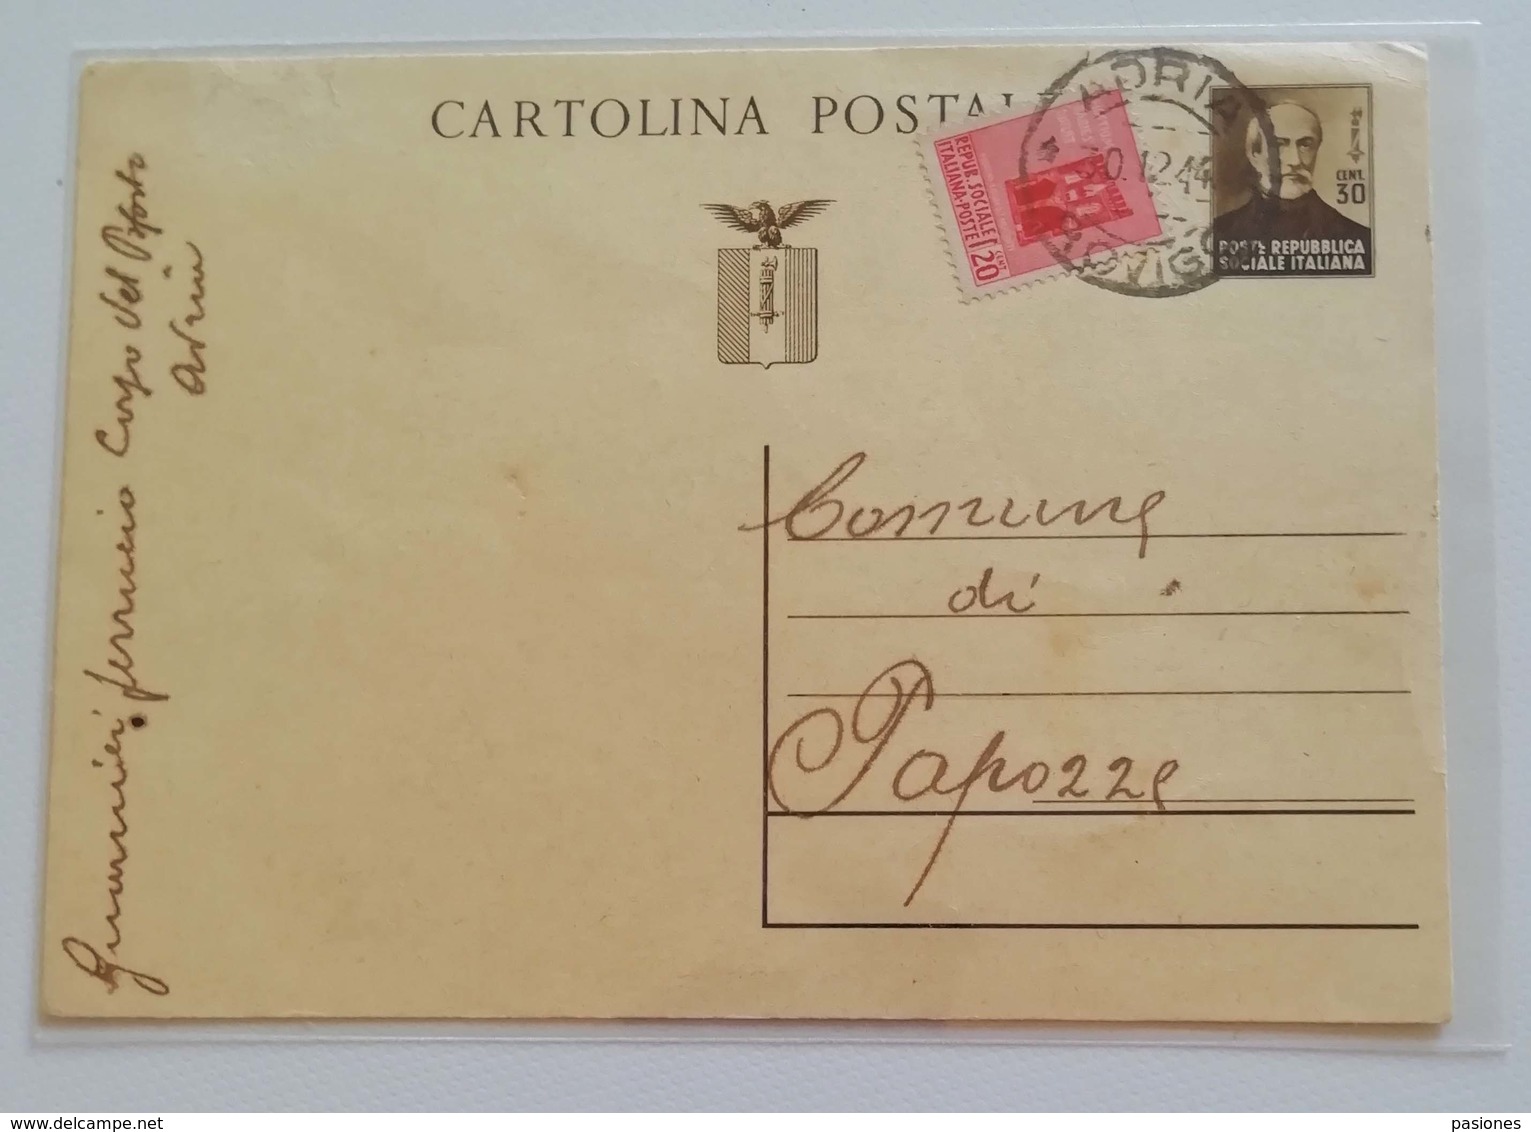 Cartolina Postale Adria-Papozze, 30/12/1944 (uso Nel Distretto) - Interi Postali